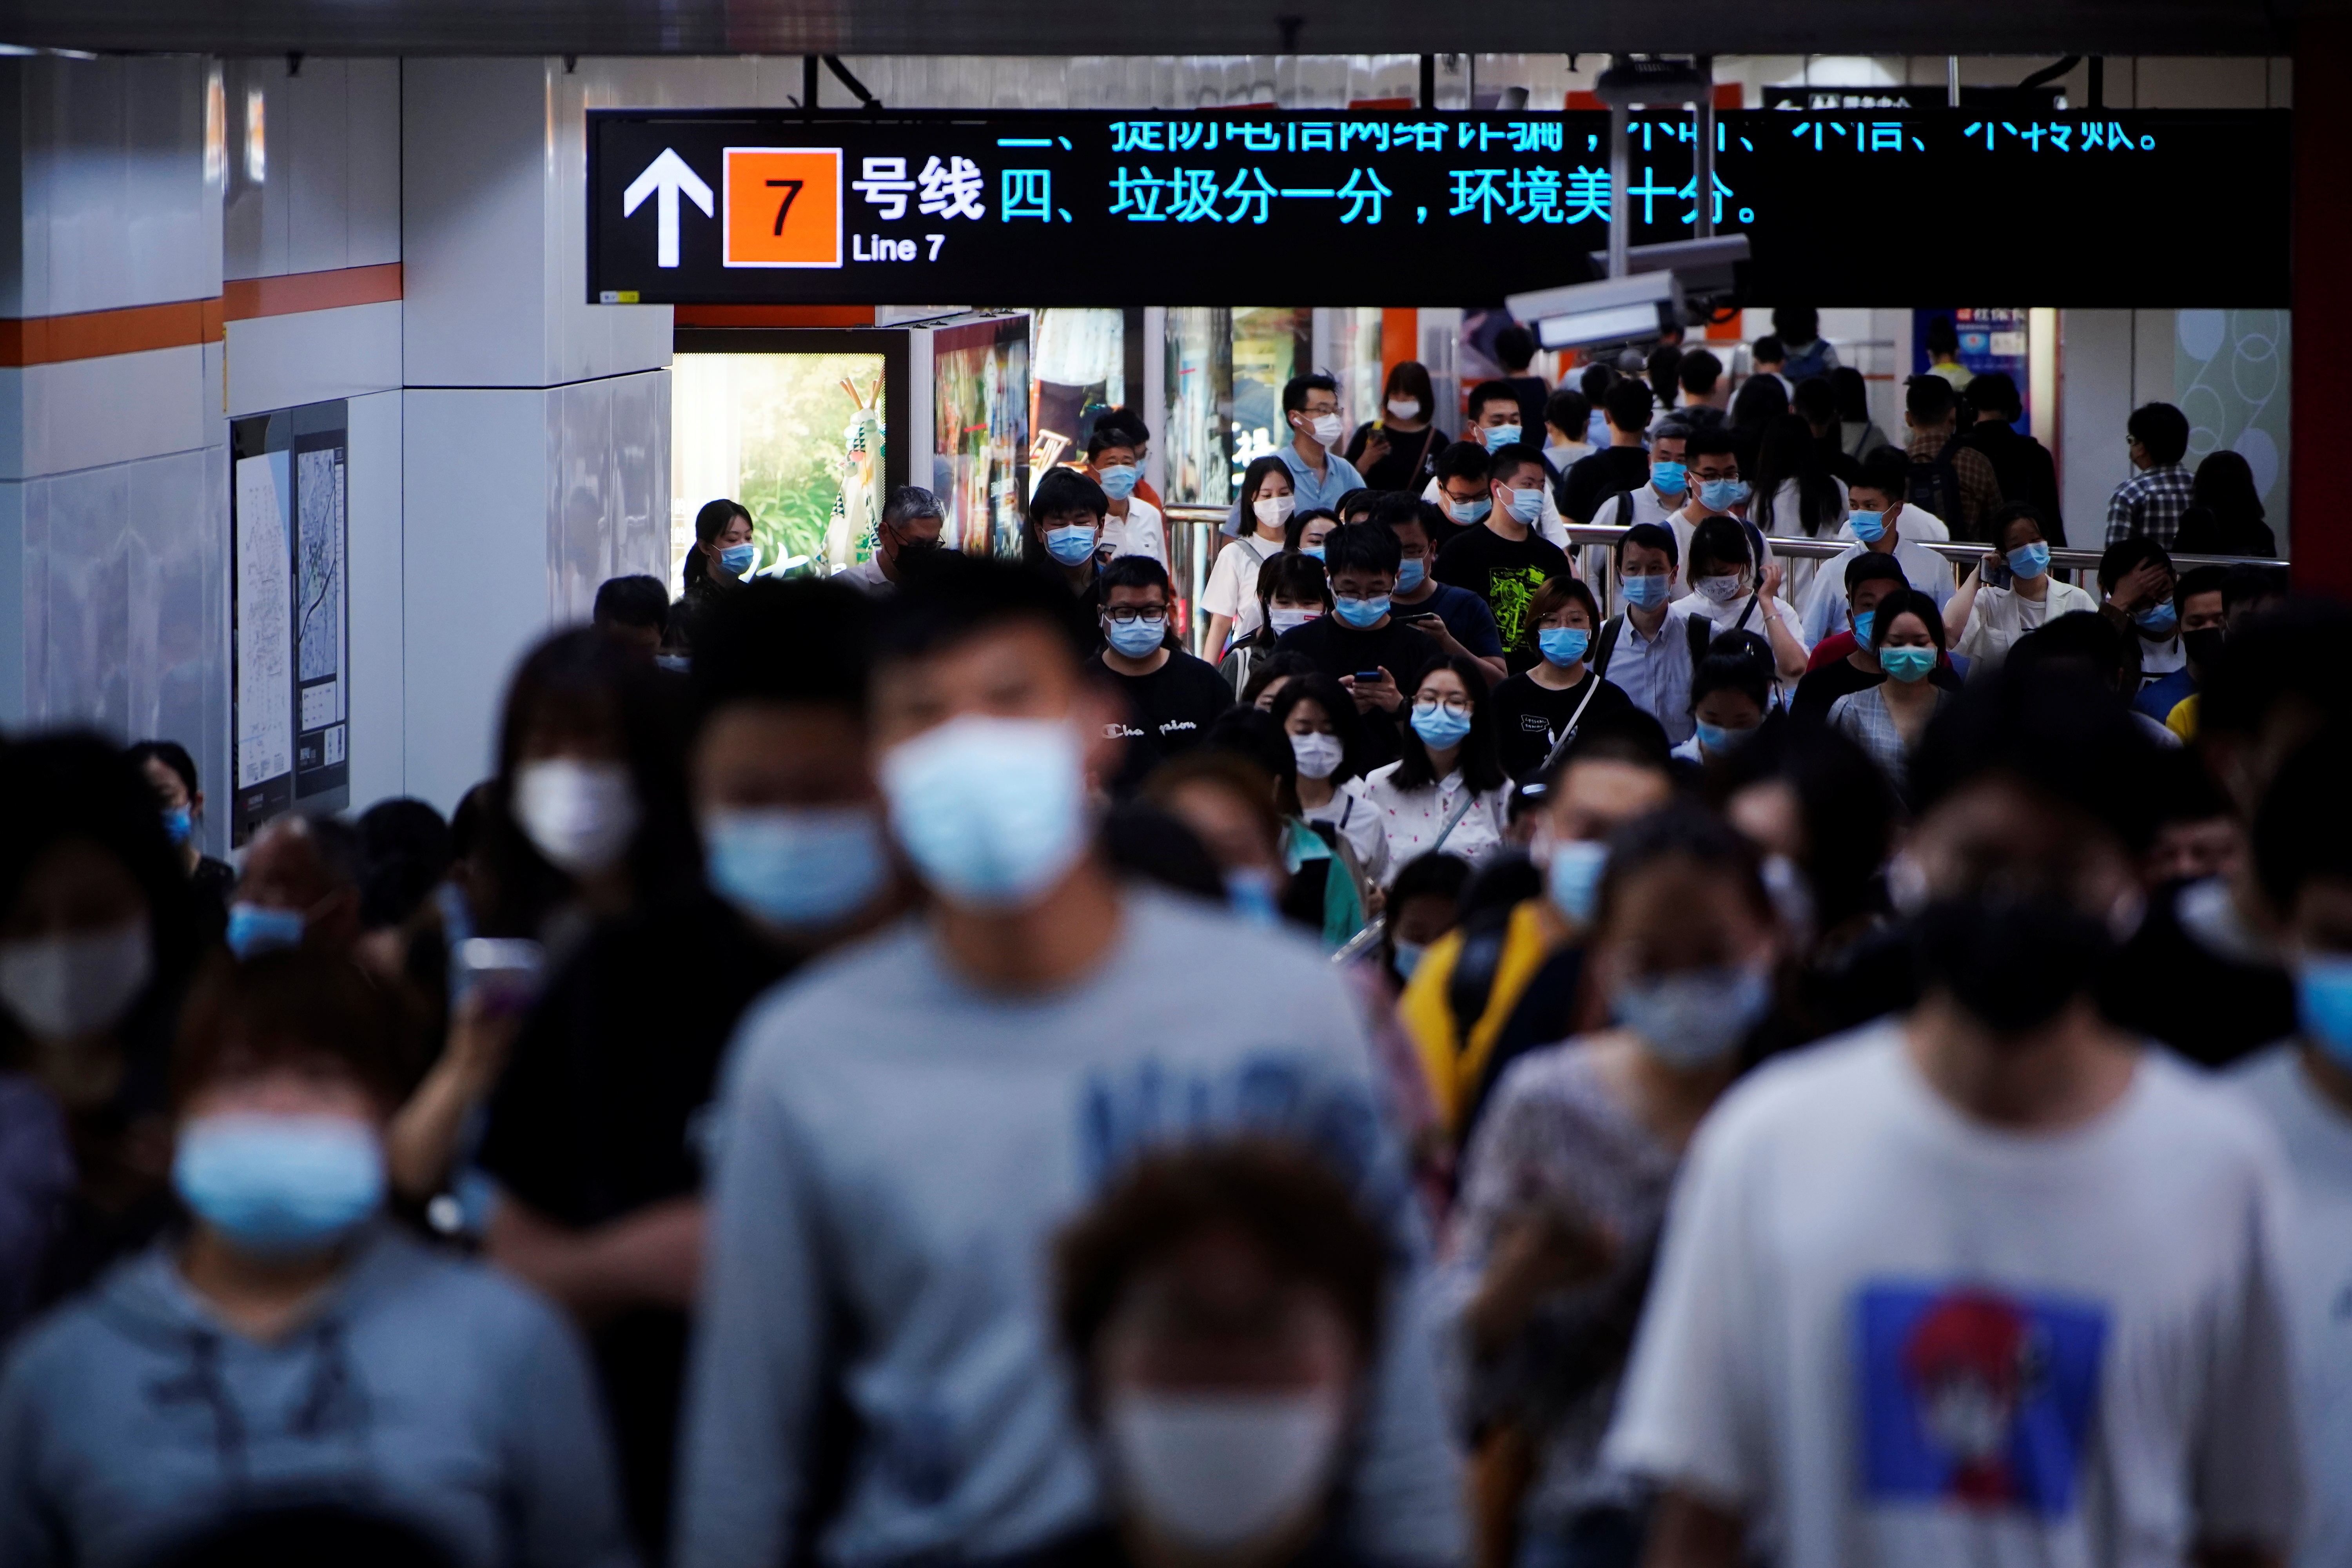 El origen de la pandemia actual estuvo en China. El panel de expertos recomendó que la OMS debe ser fortalecida y que tenga autoridad para mandar investigadores de manera rápida a los países para investigar brotes epidémicos / REUTERS/Aly Song